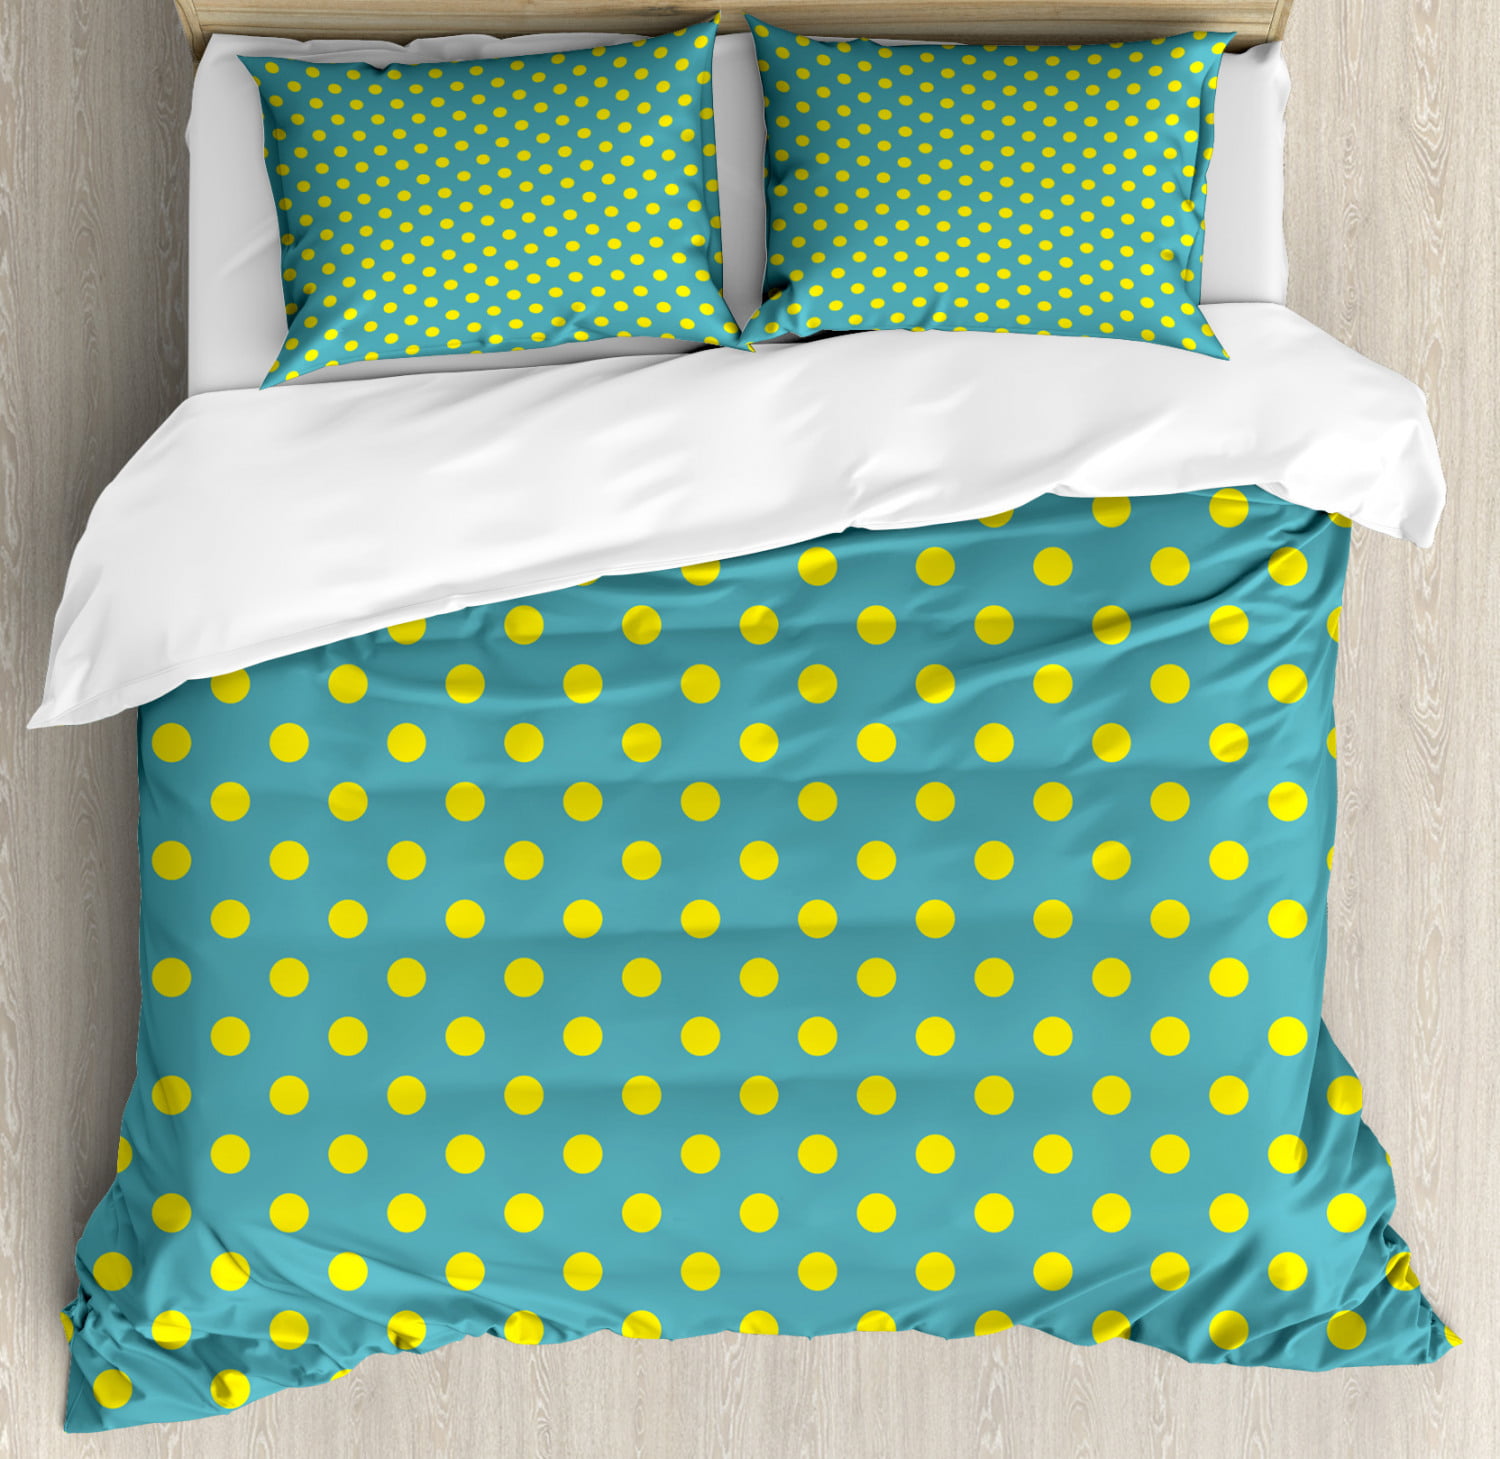 Details about   Creative Pastel Pillow Sham Decorative Pillowcase 3 Sizes Bedroom Decoration 